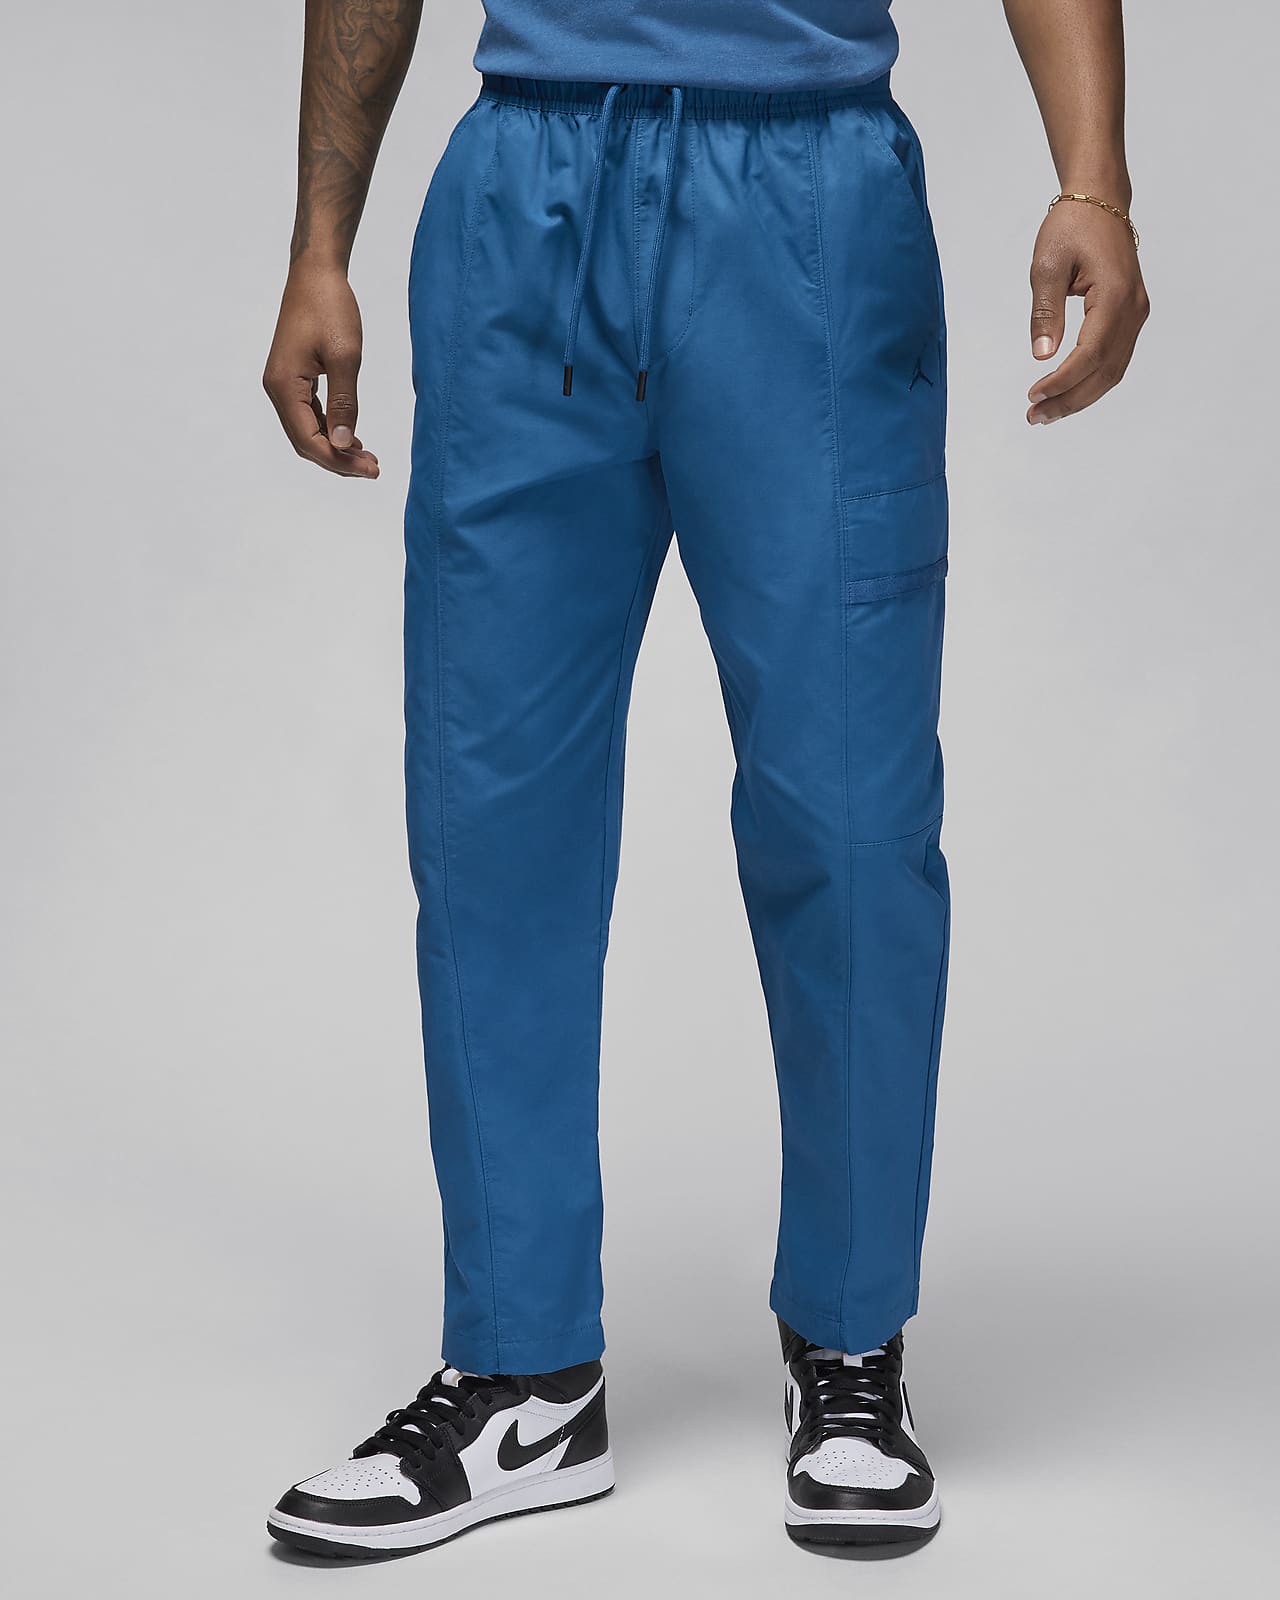 Pantalons de teixit Woven Jordan Essentials - Home